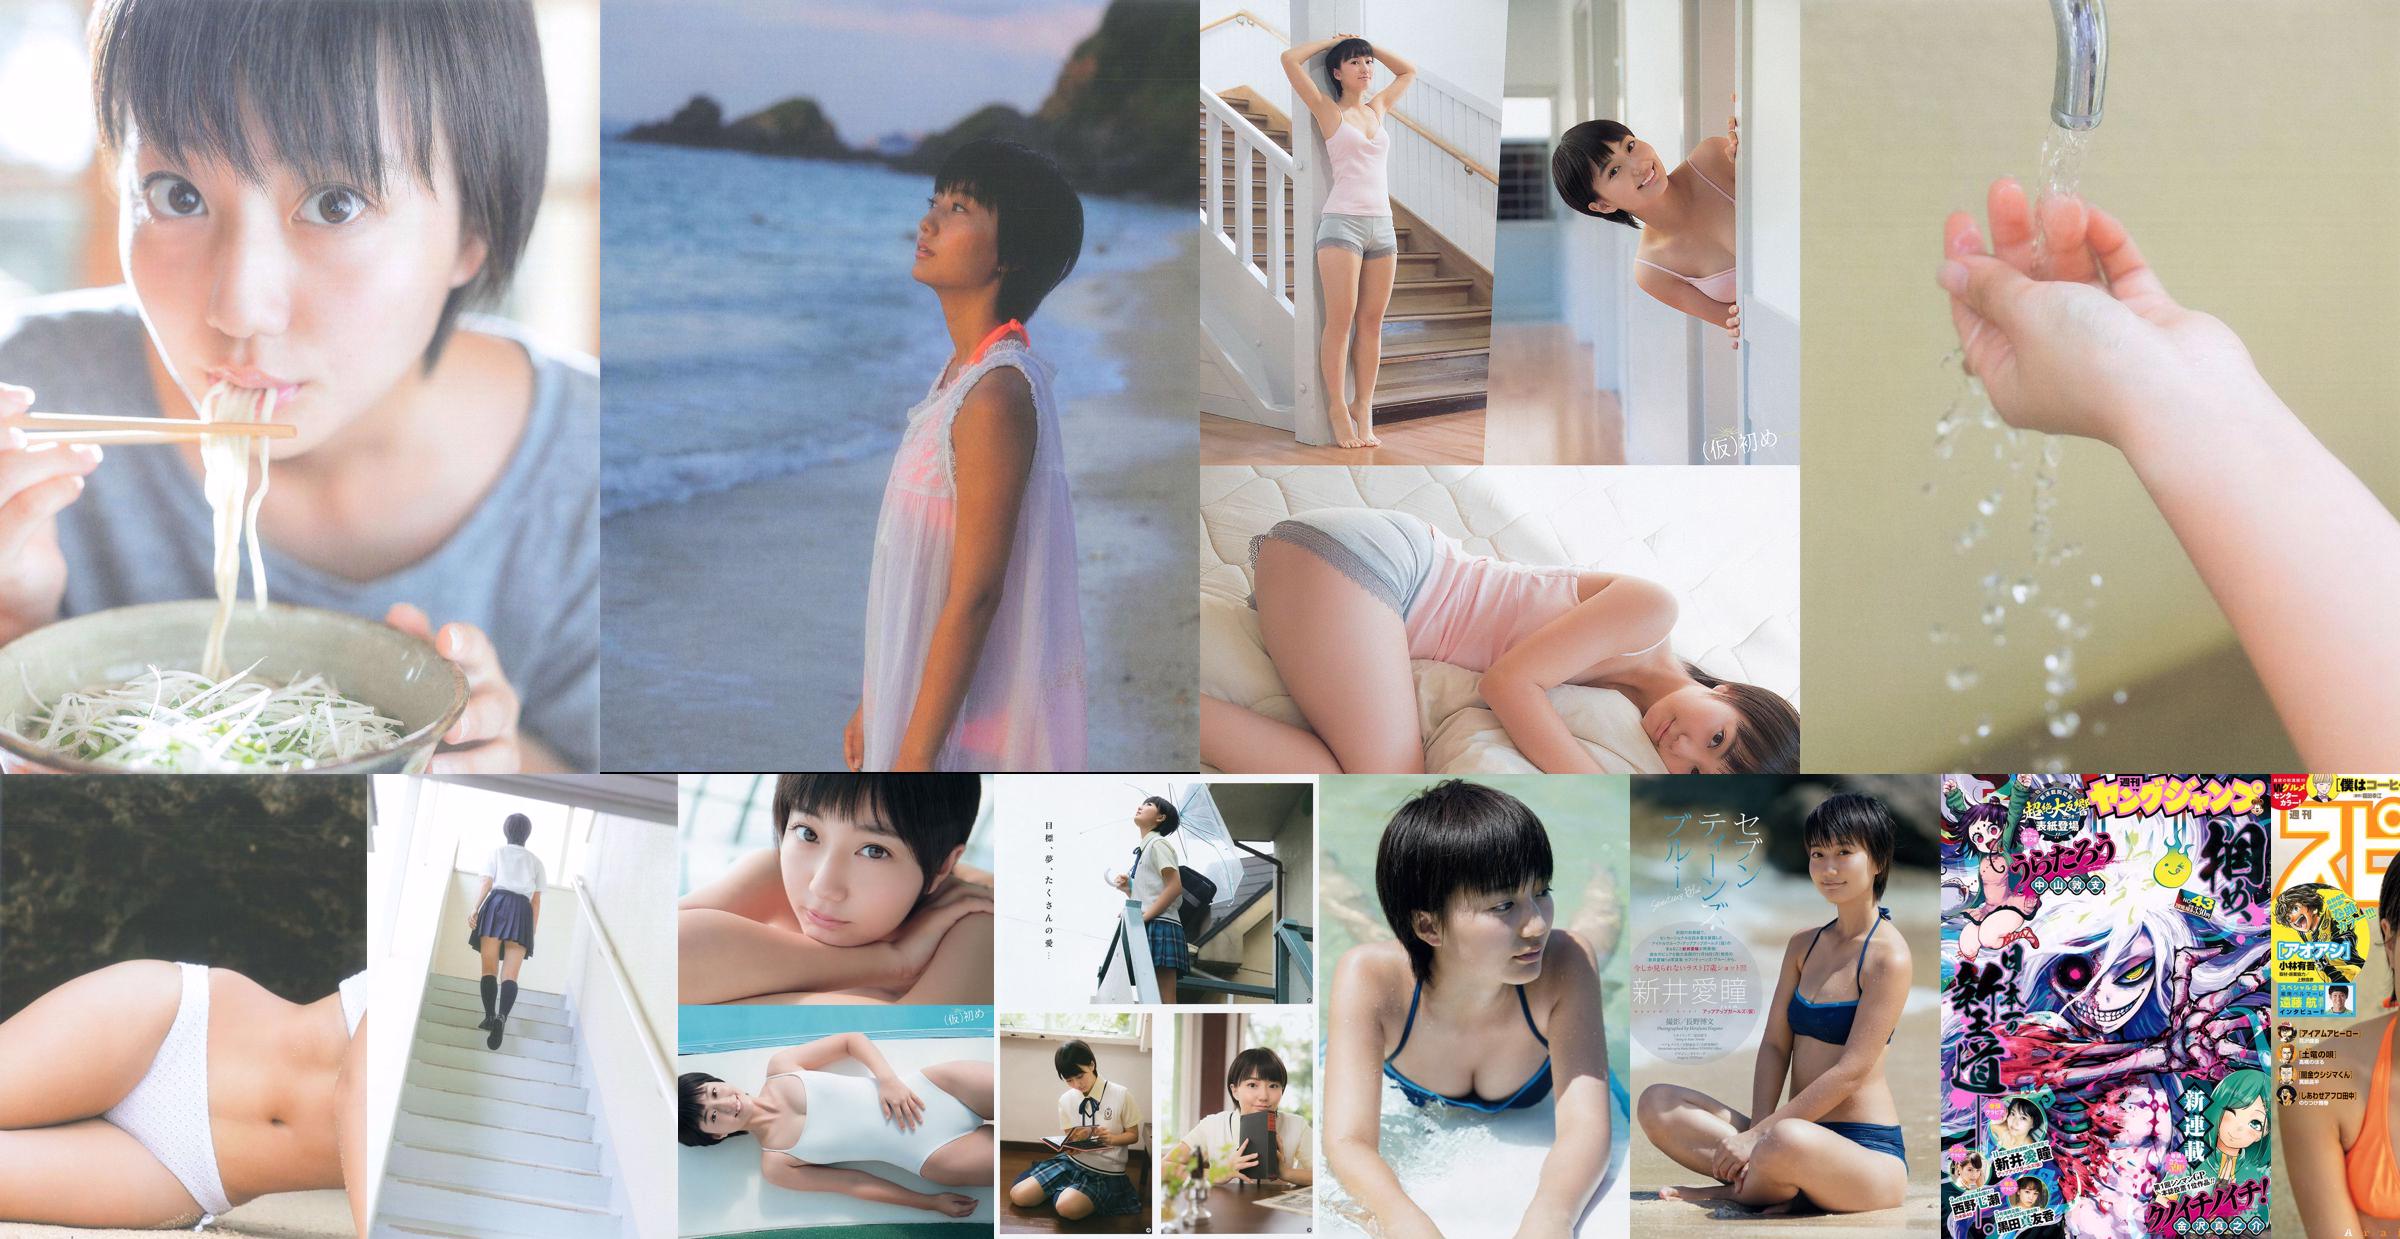 [Young Gangan] Manami Arai Mari Yamachi 2015 No.11 Fotografía No.12803f Página 2